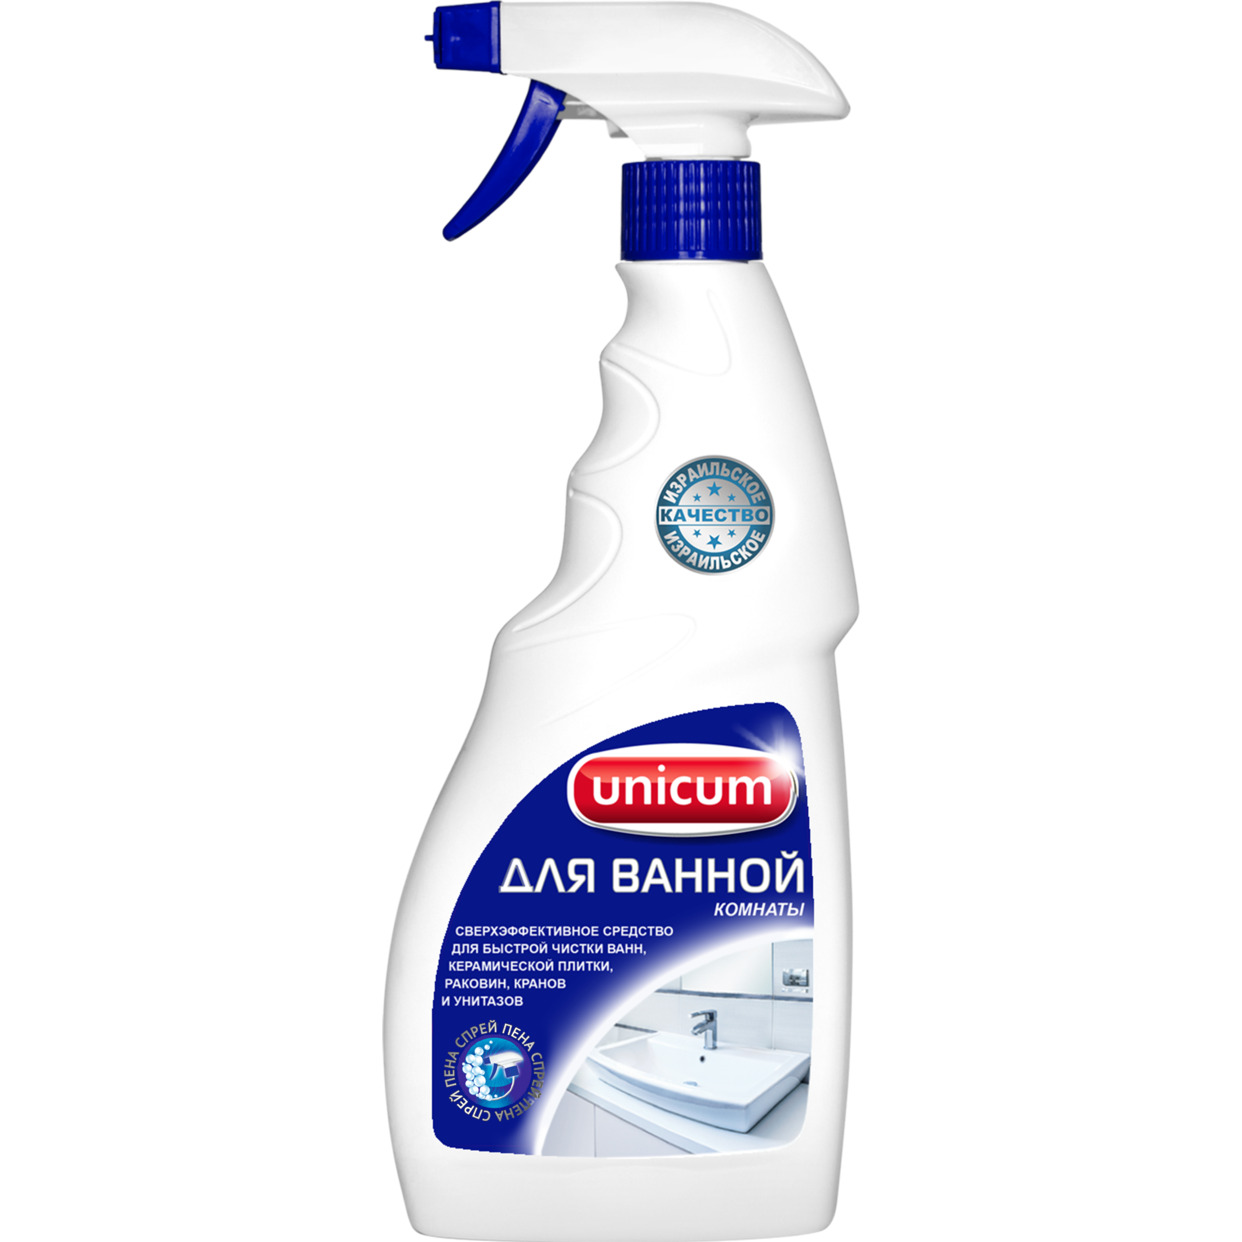 Средство для чистки ванной комнаты Unicum 500 мл